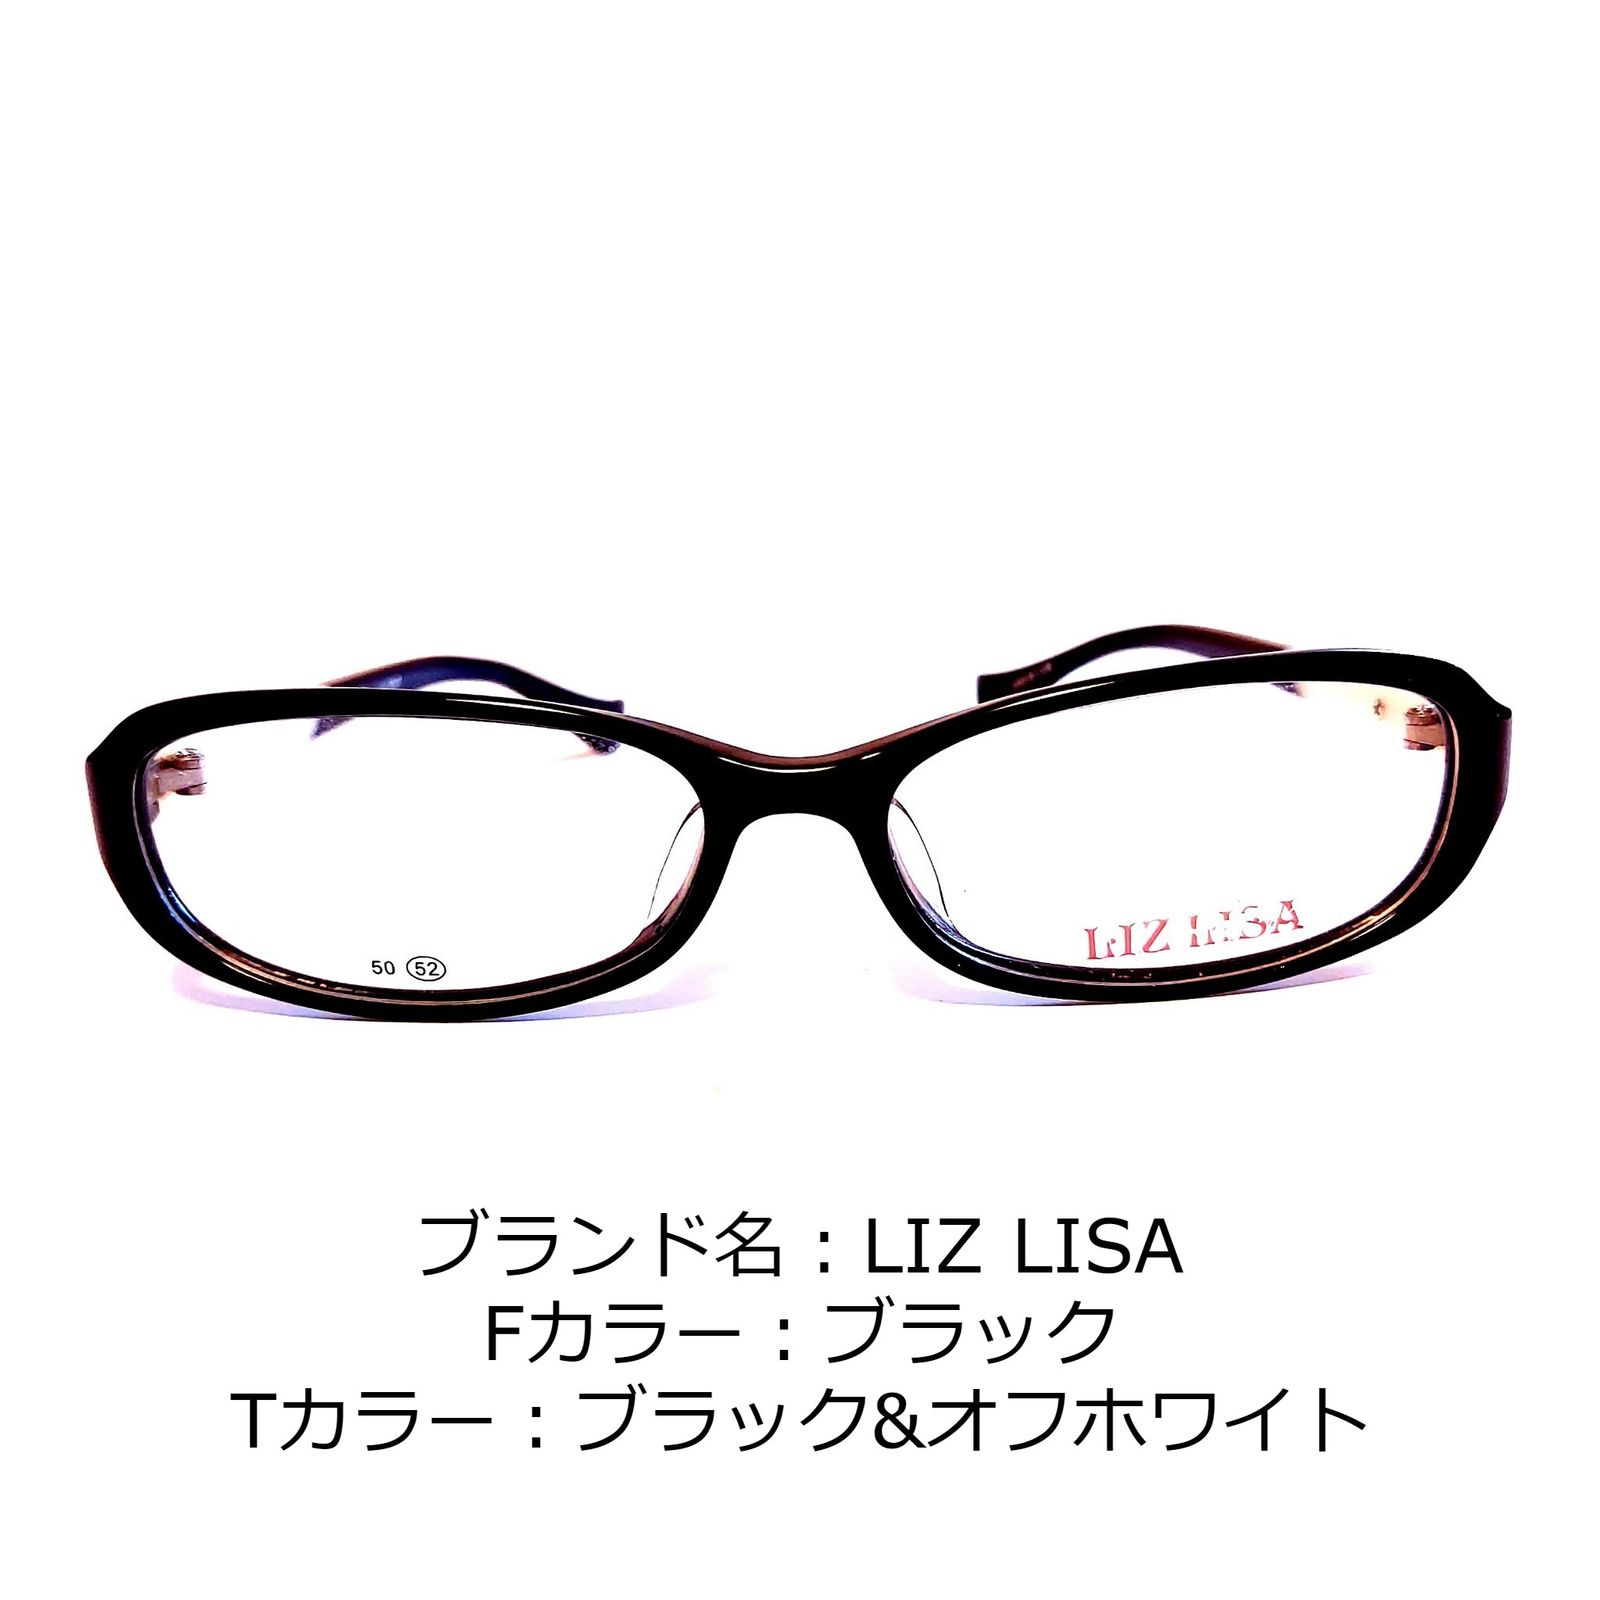 アウトレット通販店 No.1372-メガネ LIZ LISA ブラック【フレームのみ